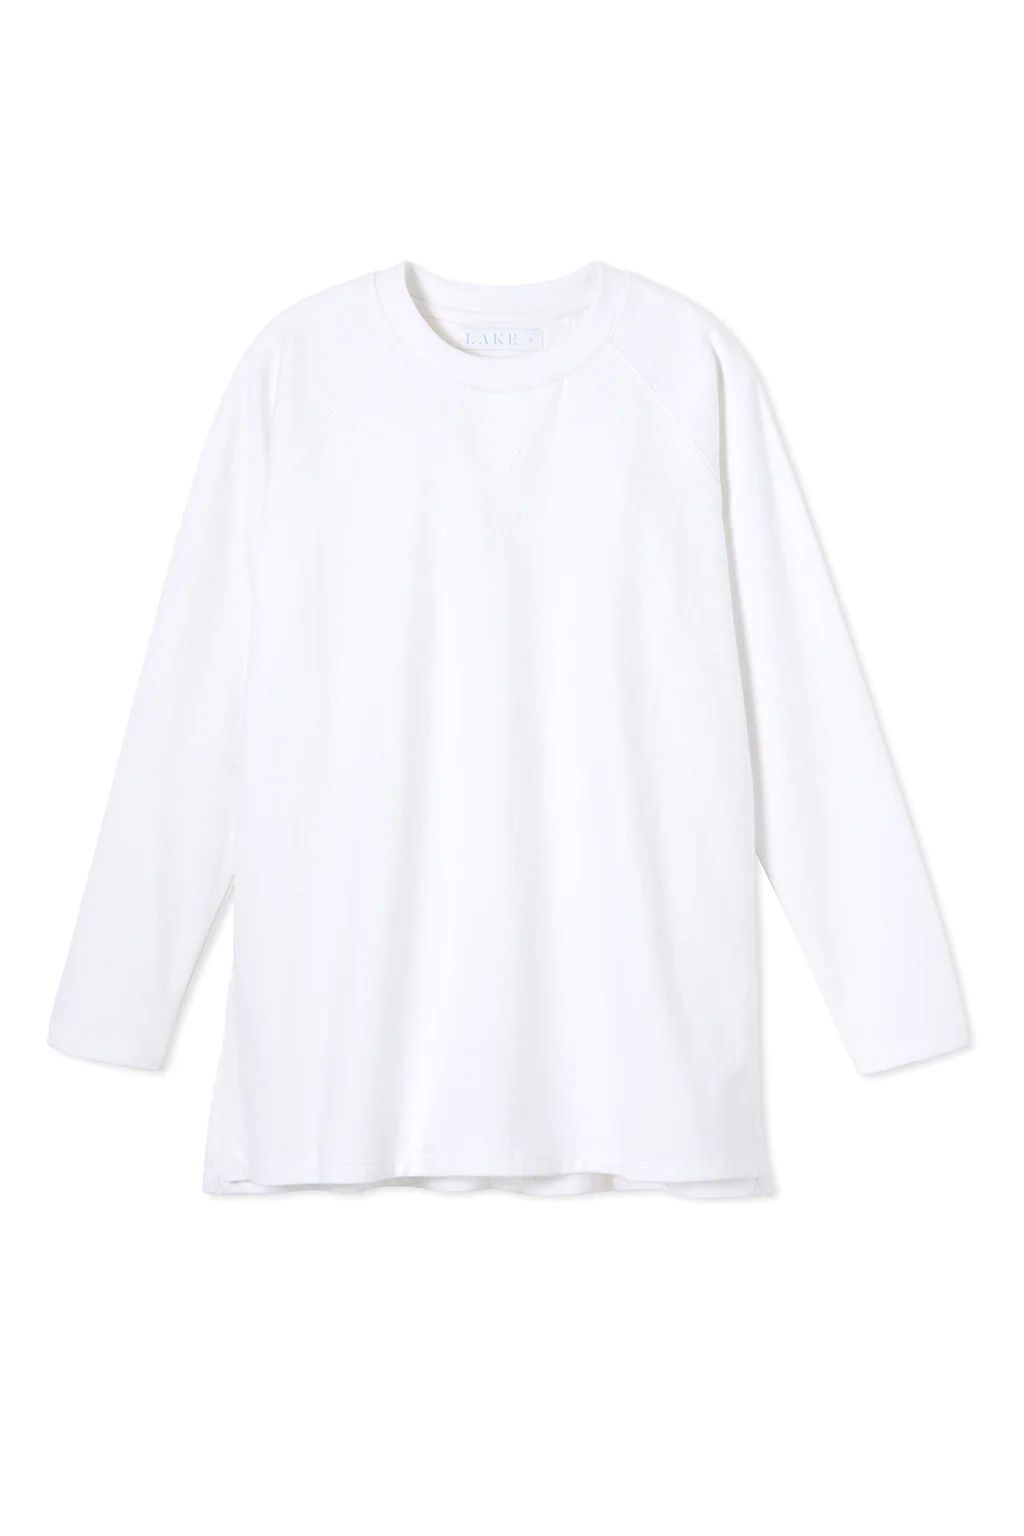 Sweatshirt Tunic in White | Lake Pajamas